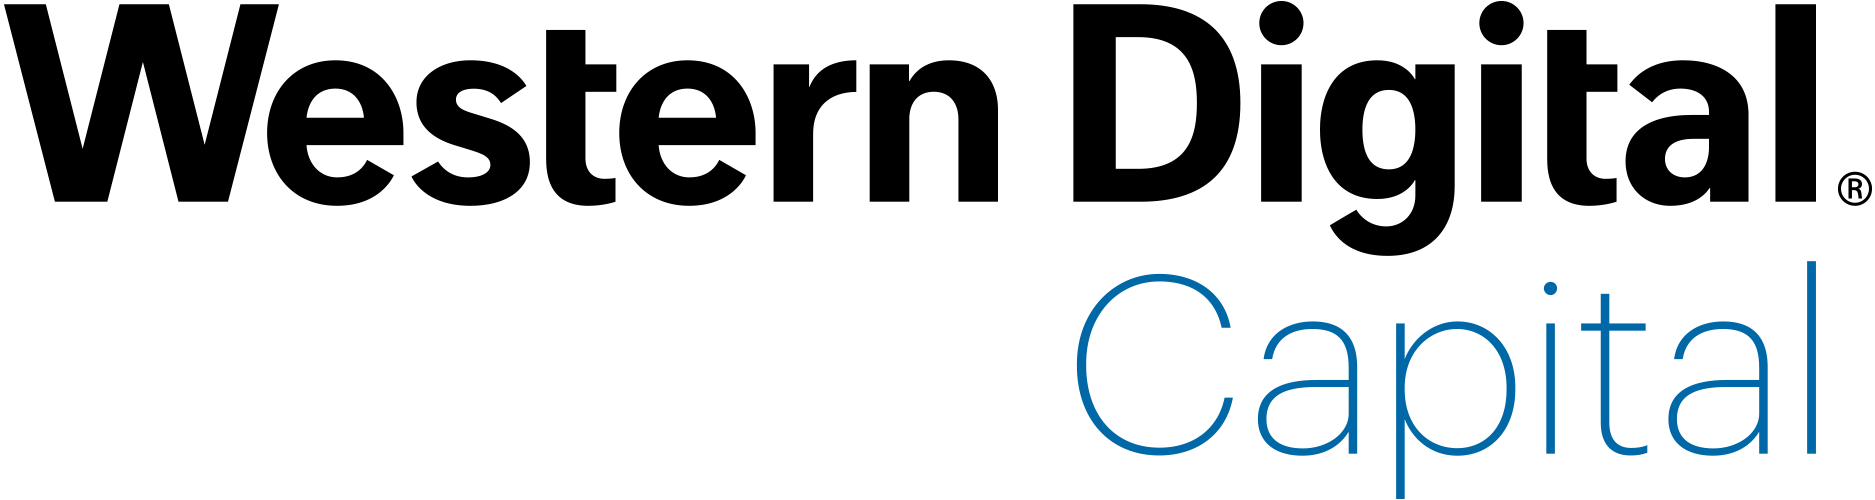 Western Digital Logo - Western Digital Capital Financing Forum